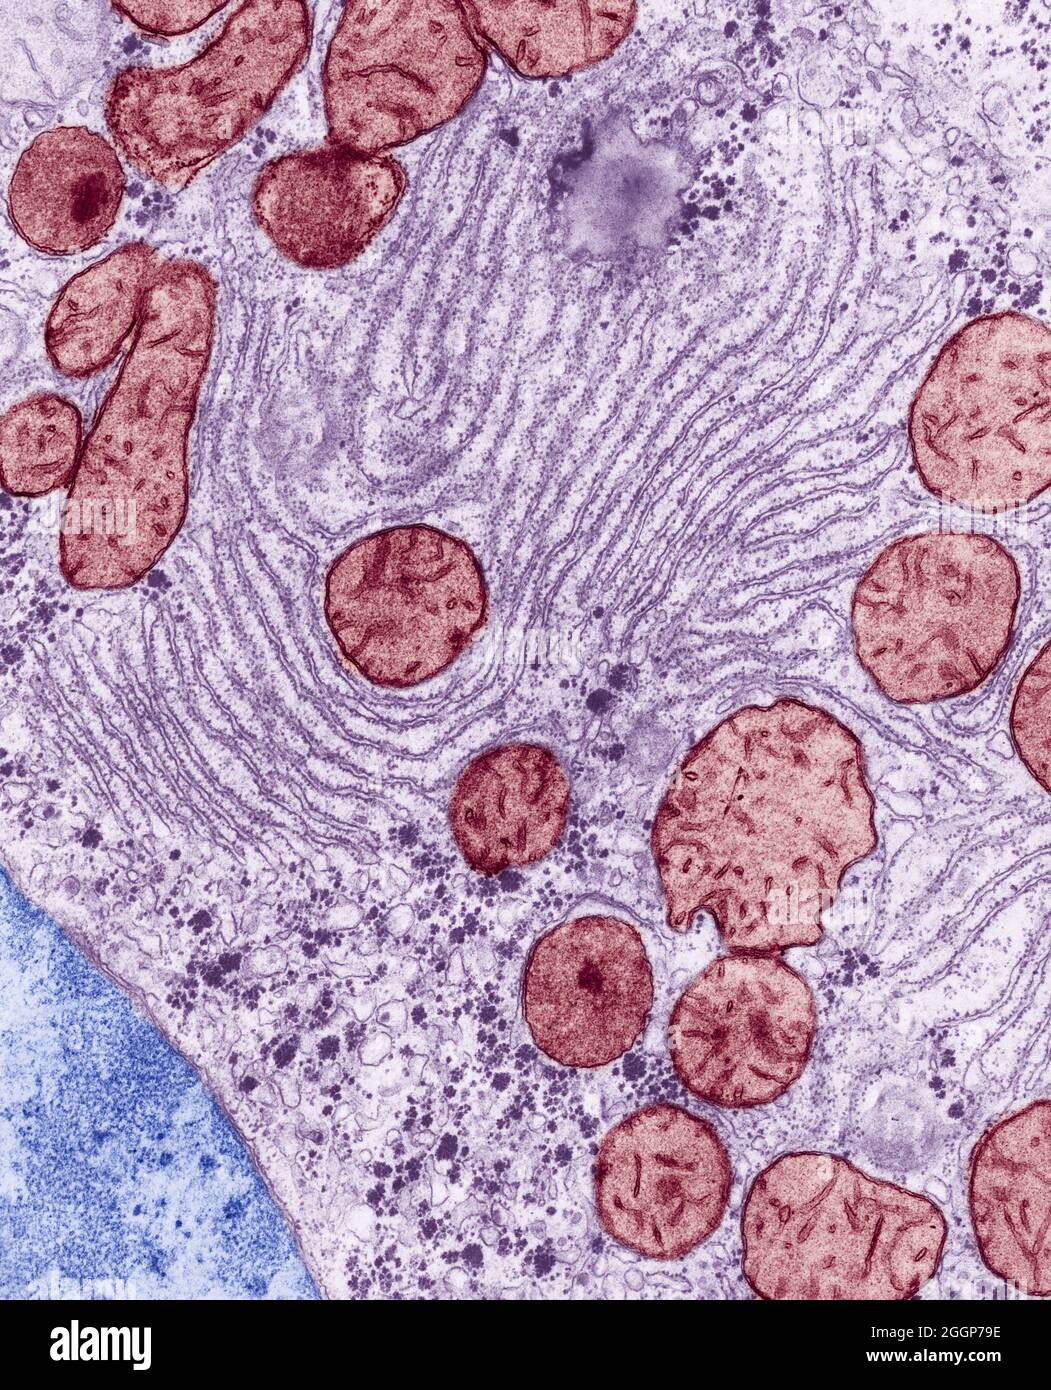 Trasmissione colorata micrografia elettronica (TEM) di reticolo endoplasmatico e mitocondri nel fegato di un ratto. Foto Stock